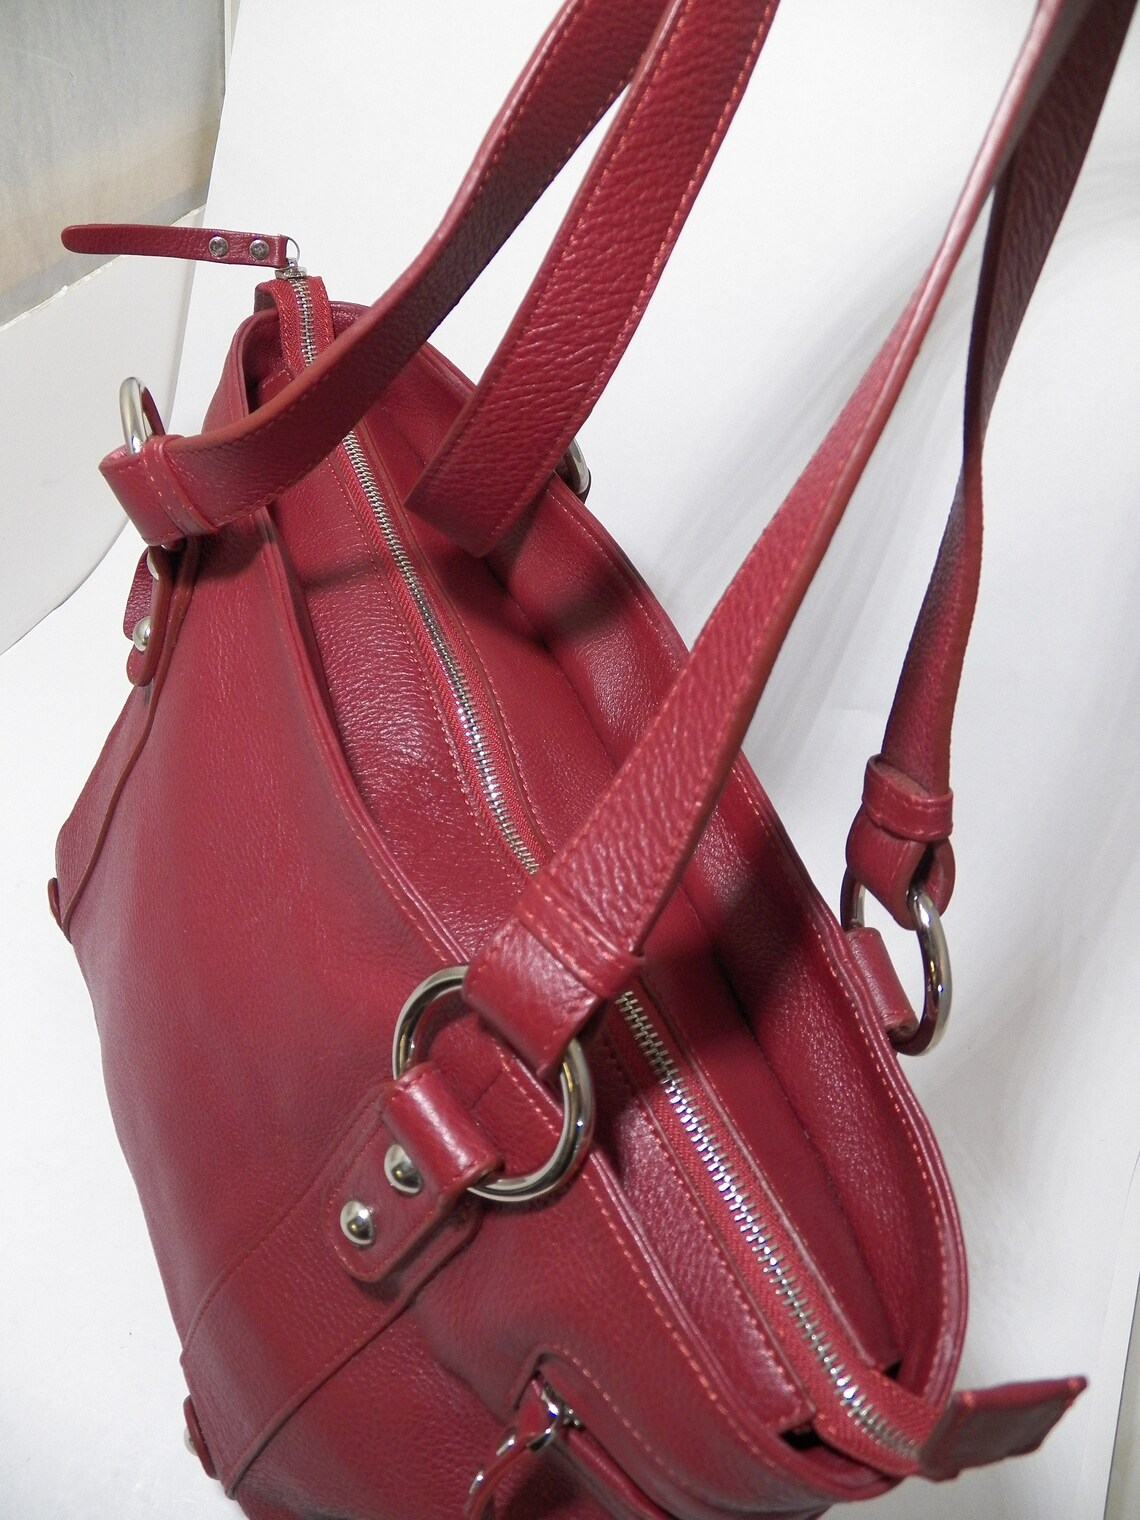 DAYTIMER Pebbled Leather Burgundy Red Tote Bag Purse Shoulder - Etsy